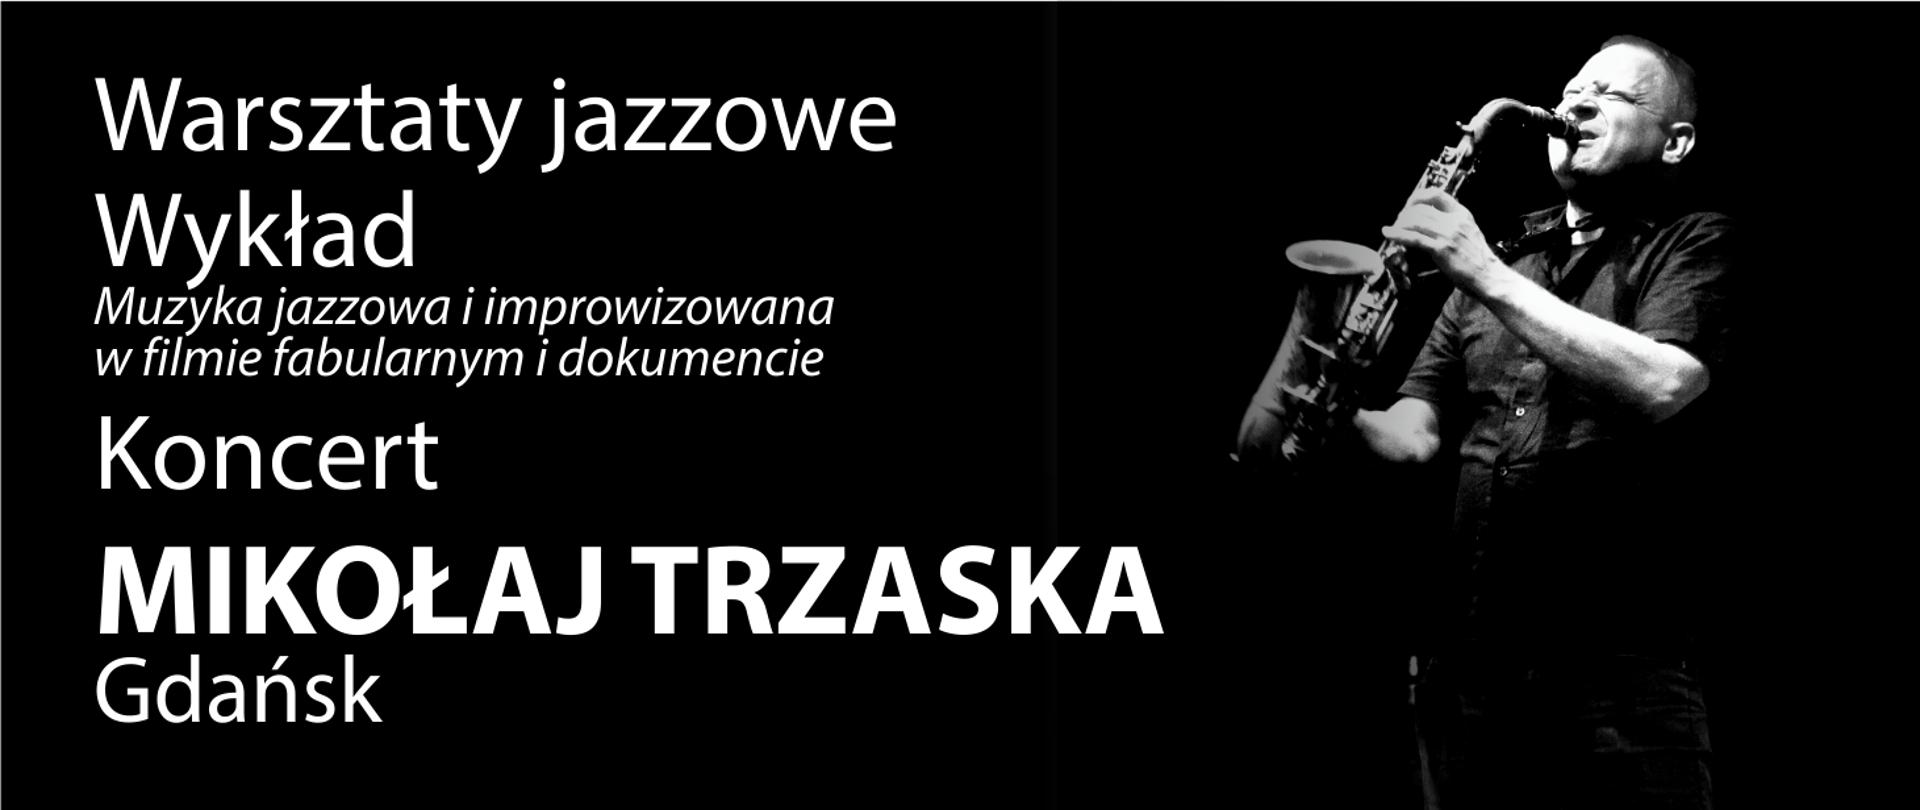 Grafika przedstawia zdjęcie Mikołaja Trzaski oraz prezentuje napis: Warsztaty jazzowe, Wykład, Koncert